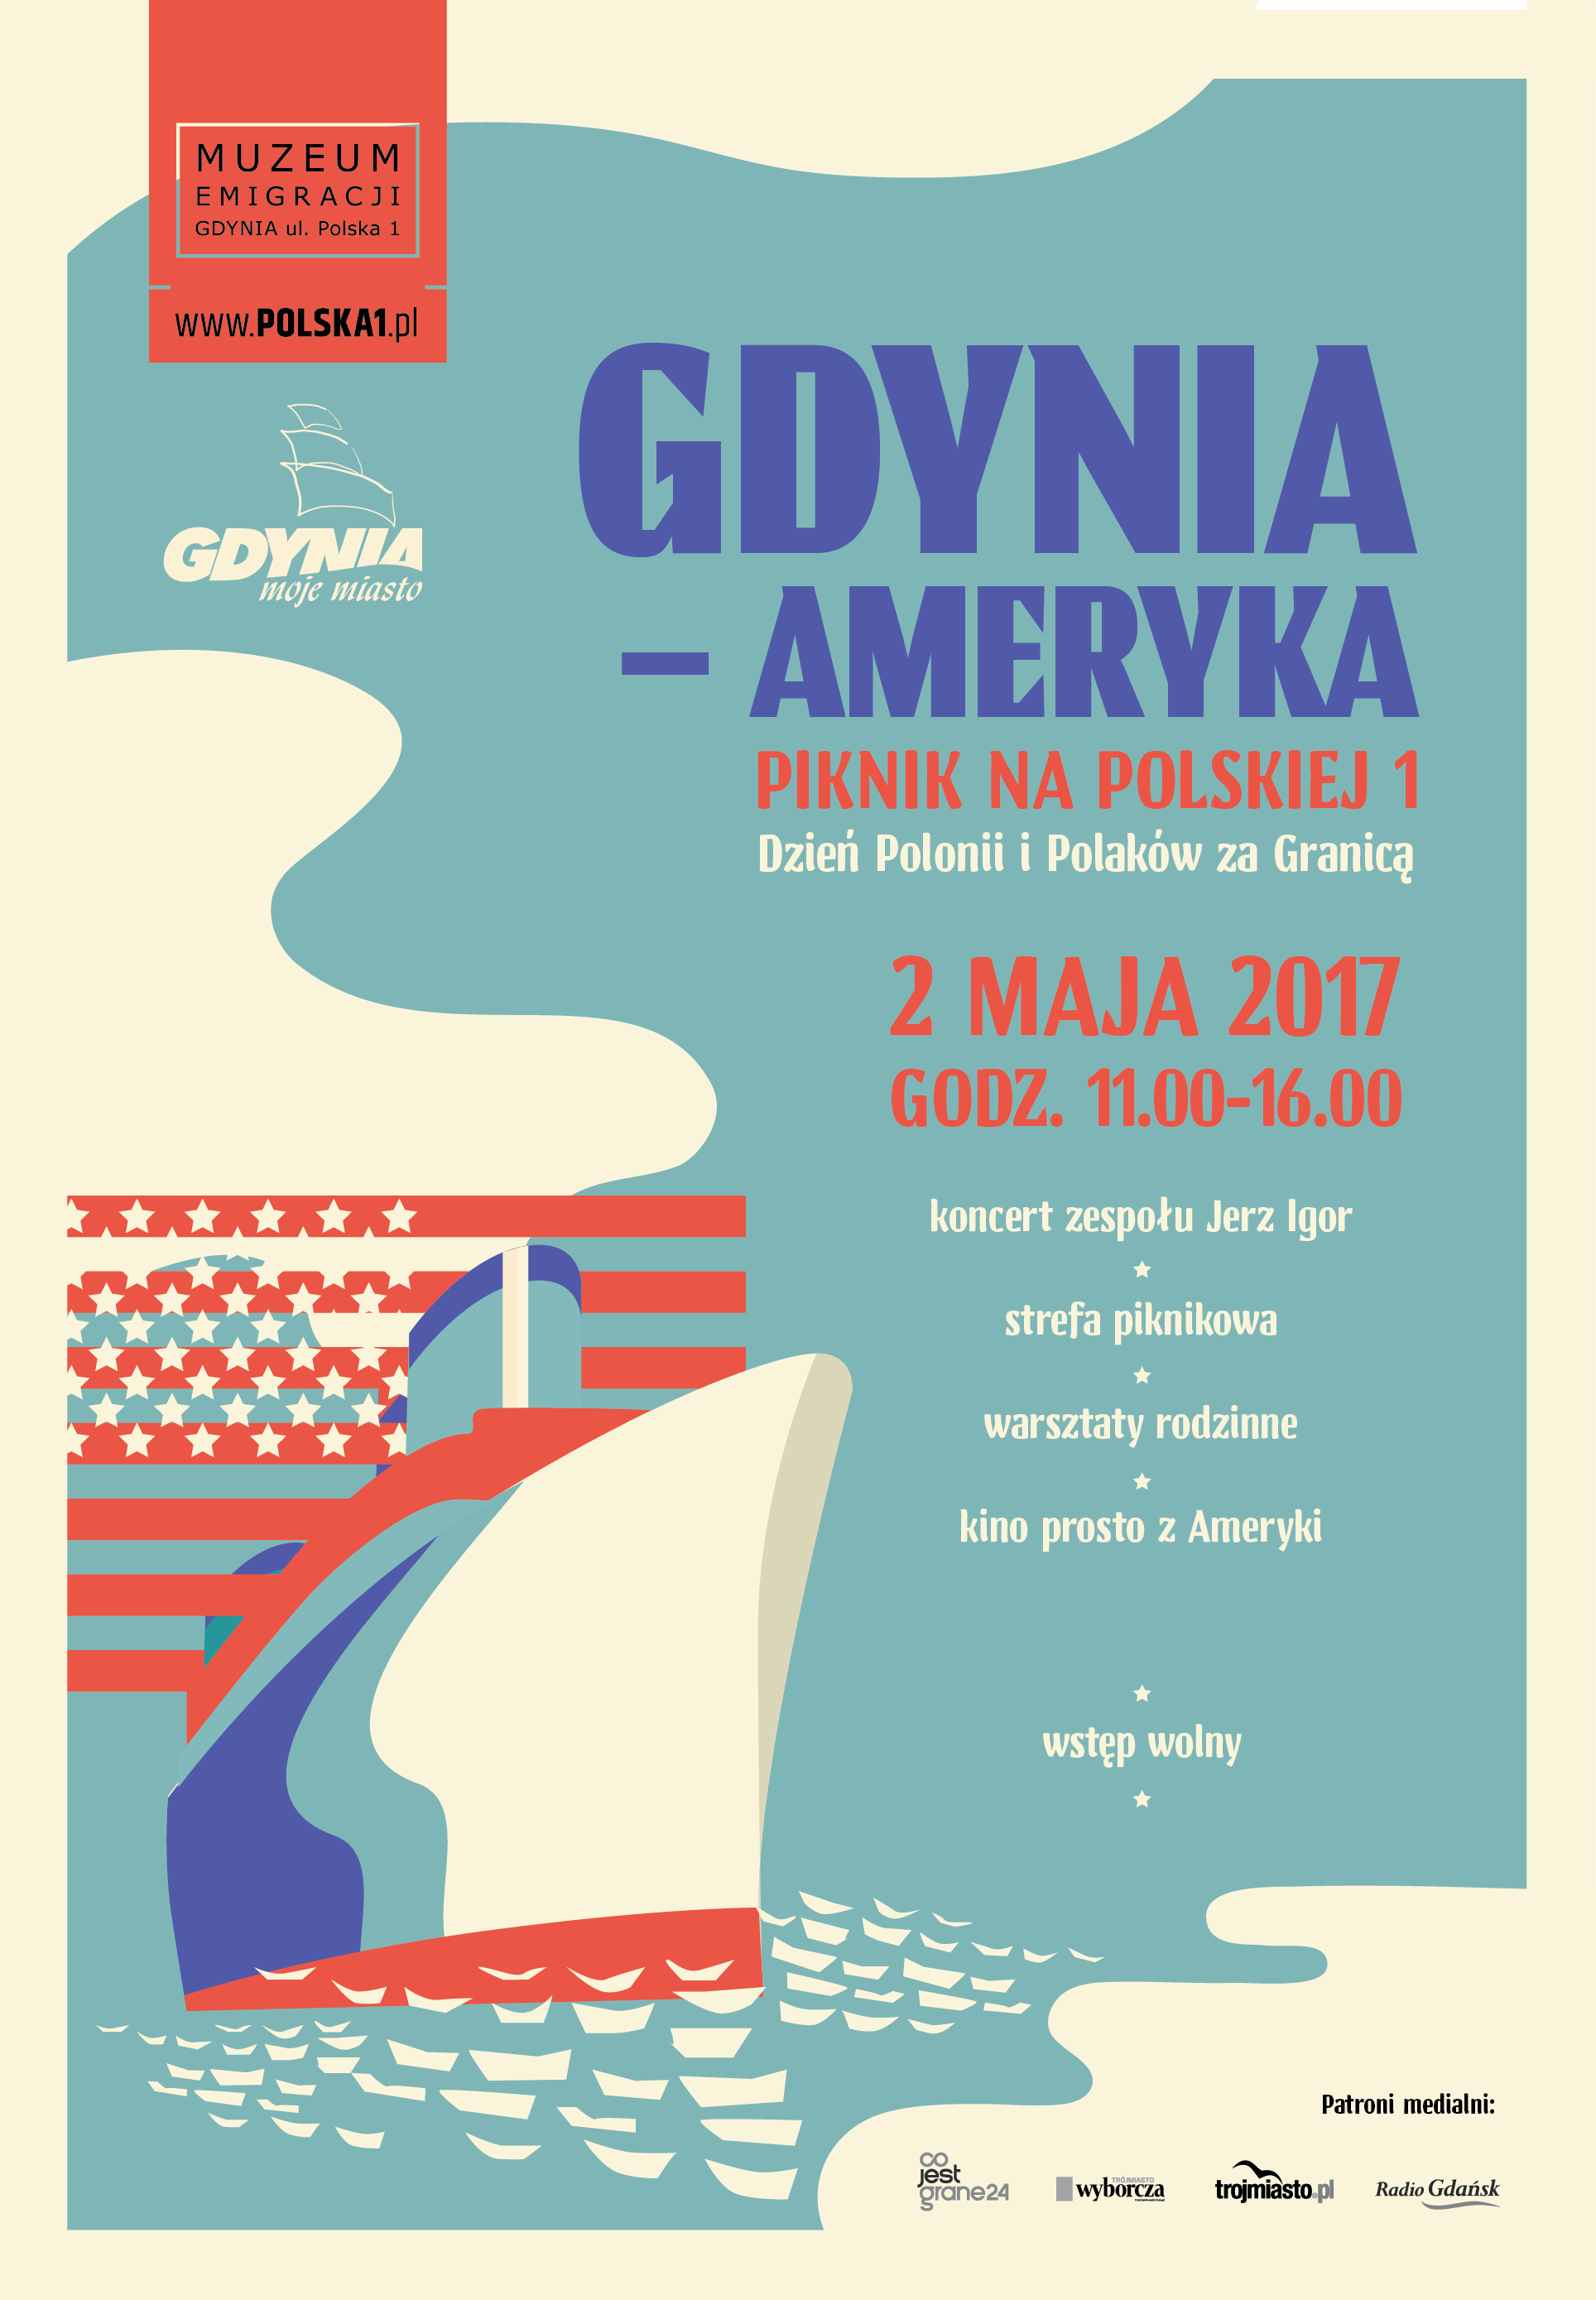 Gdynia-Ameryka, Piknik na Polskiej 1, Muzeum Emigracji